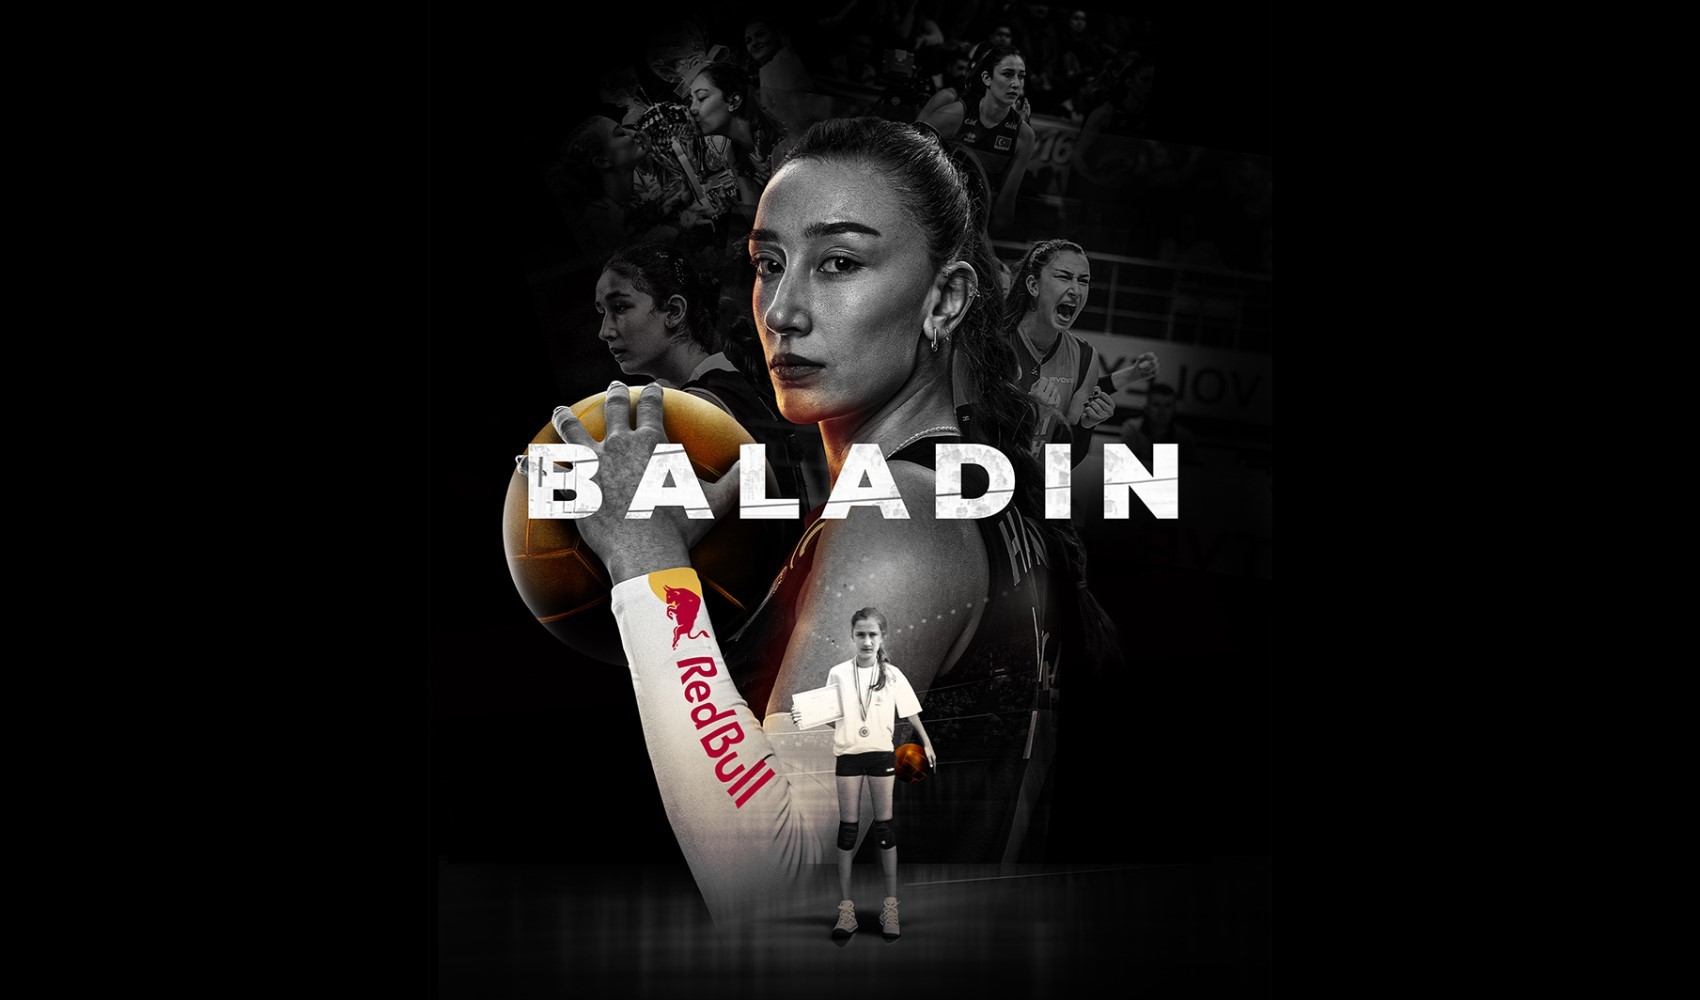 Hande Baladın'ın belgesel filmi yarın yayına giriyor!